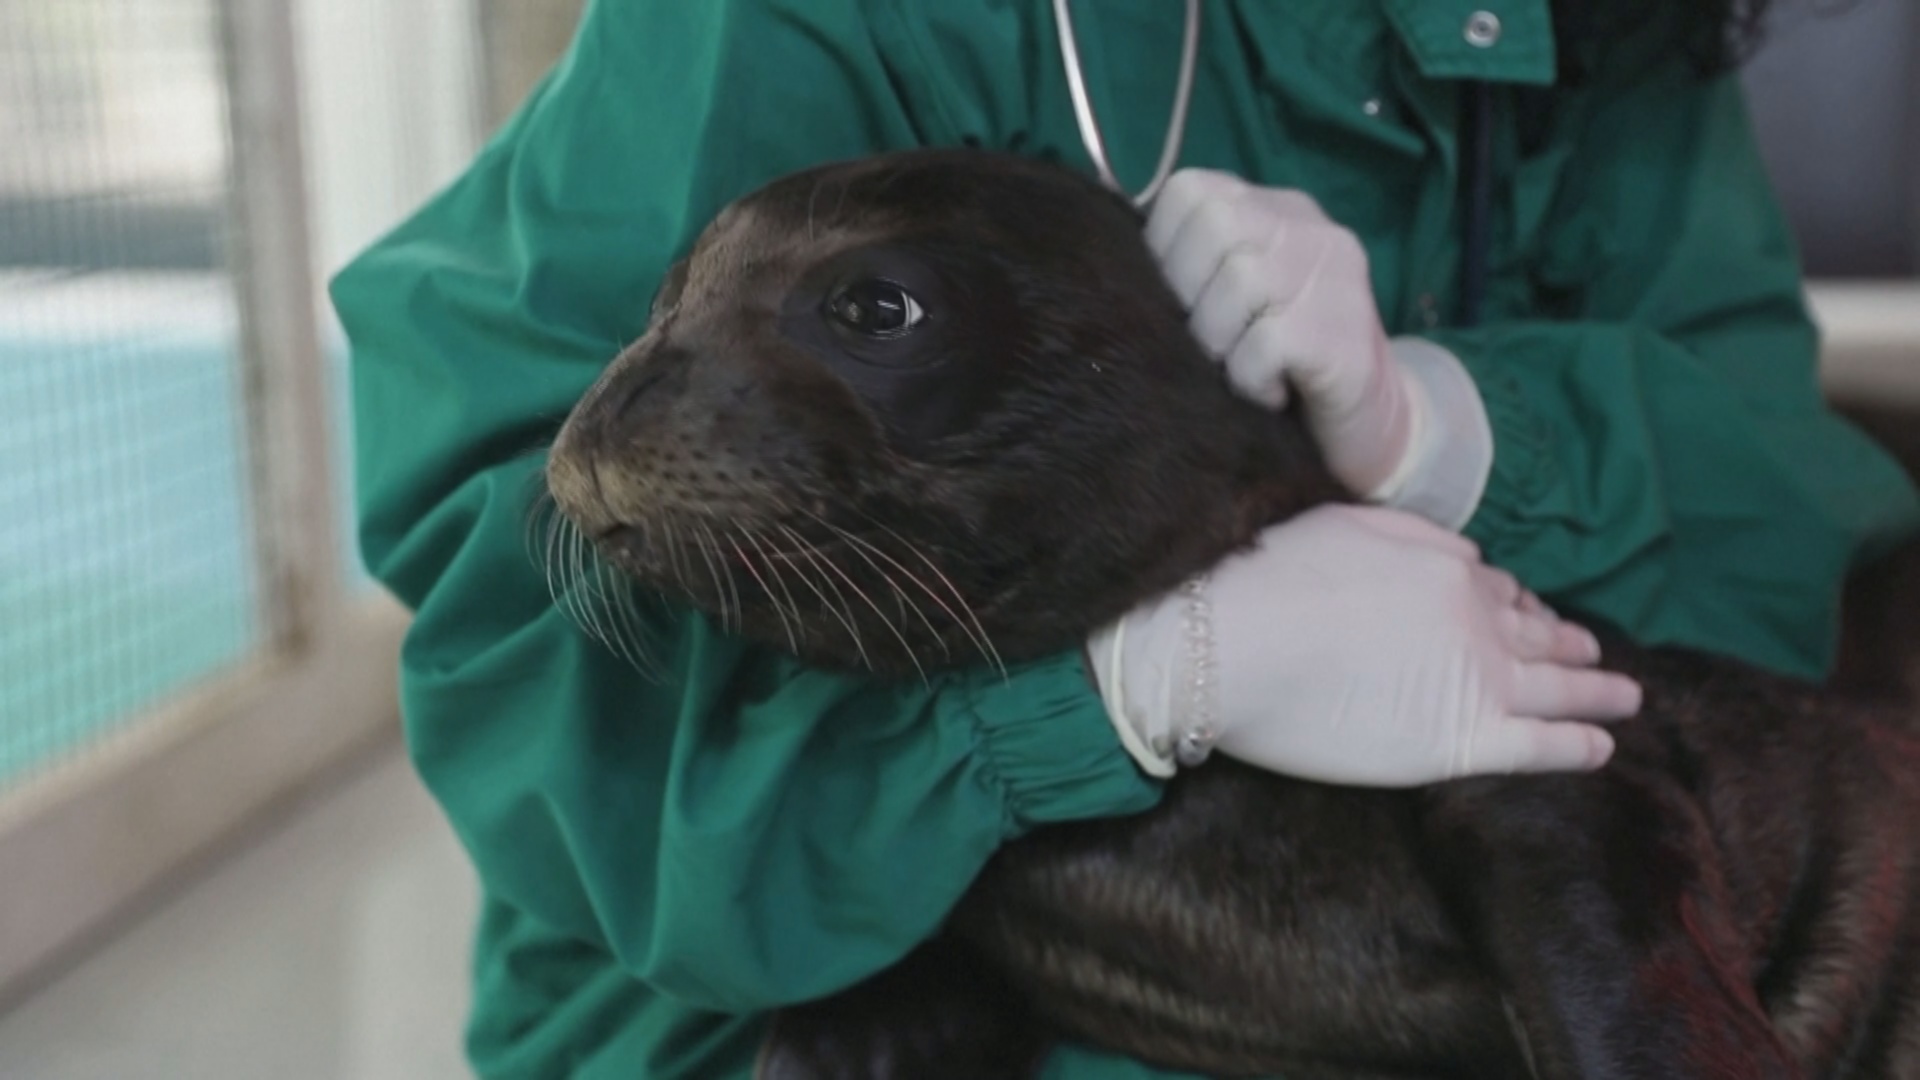 Детёныша редкого тюленя-монаха спасли и вернули в дикую природу Греции